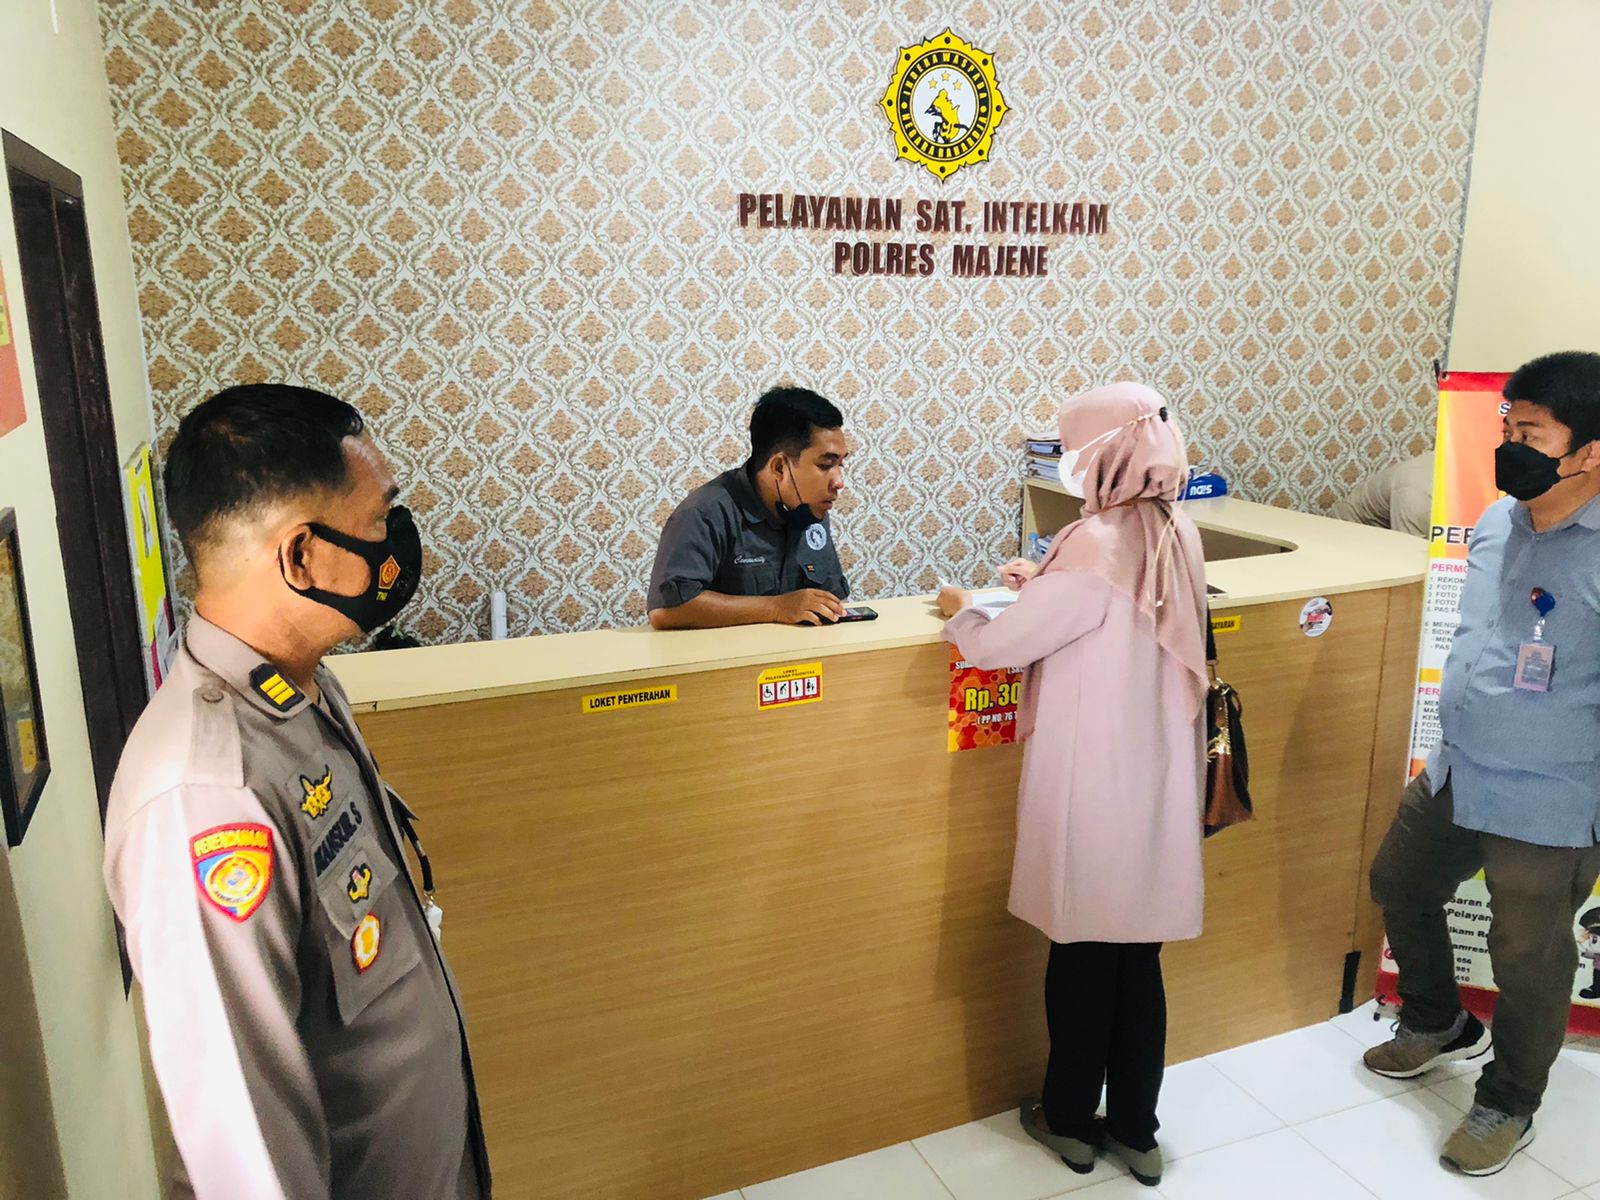 Pelayanan Publik Polres Majene Jadi Target Kunjungan Ombudsman